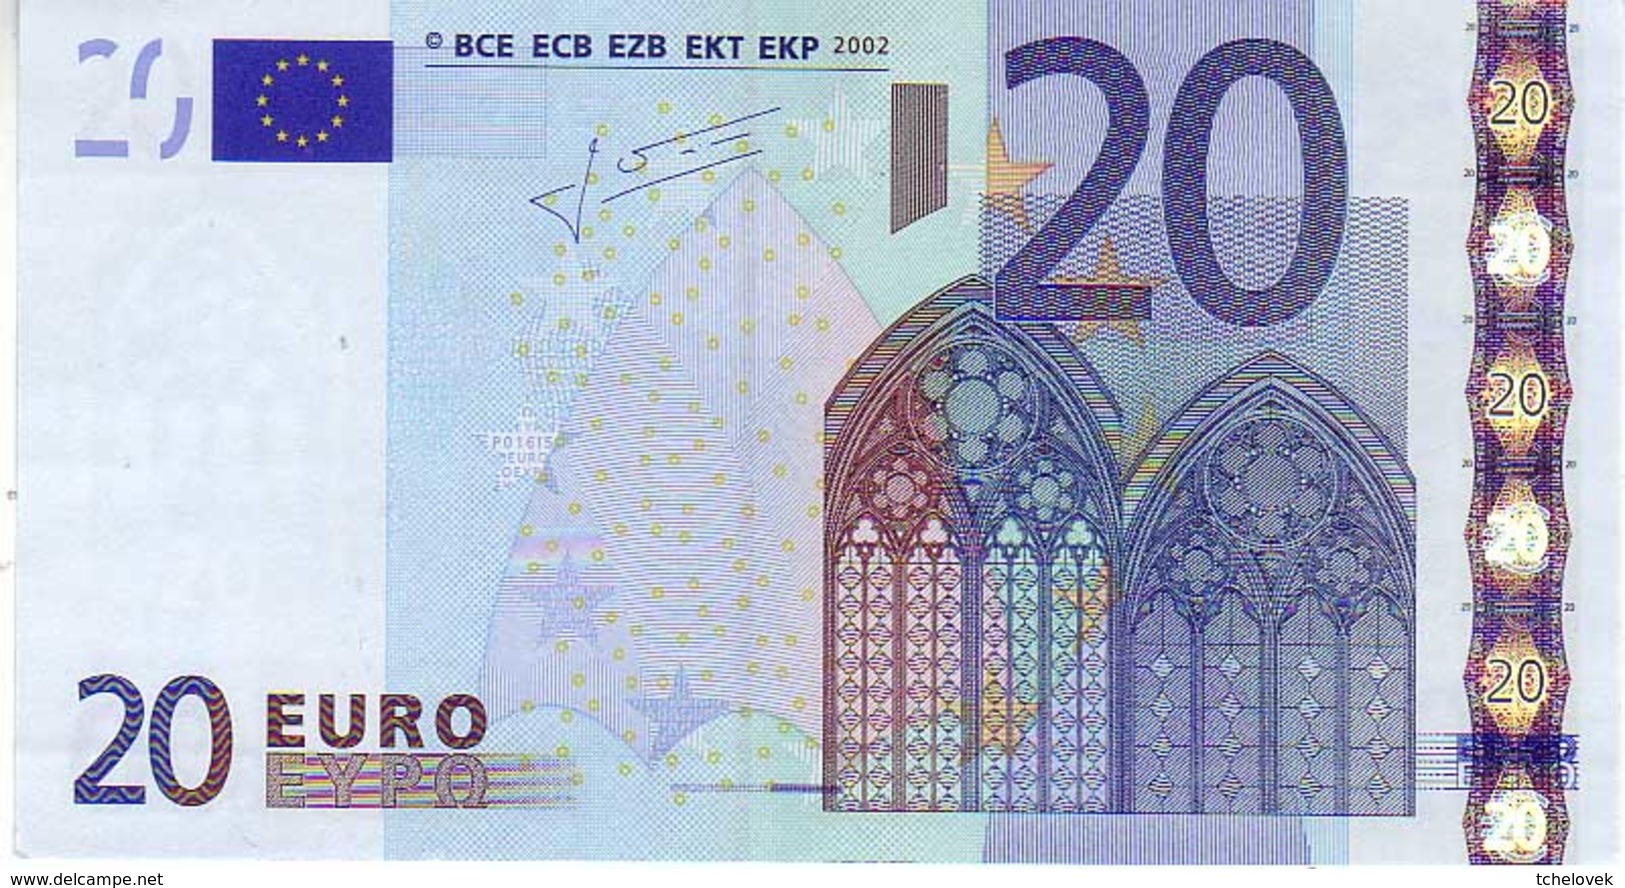 20 Euros 2002 Serie X, P016I5, N° X 3149583577,  Signature 2 UNC - 20 Euro